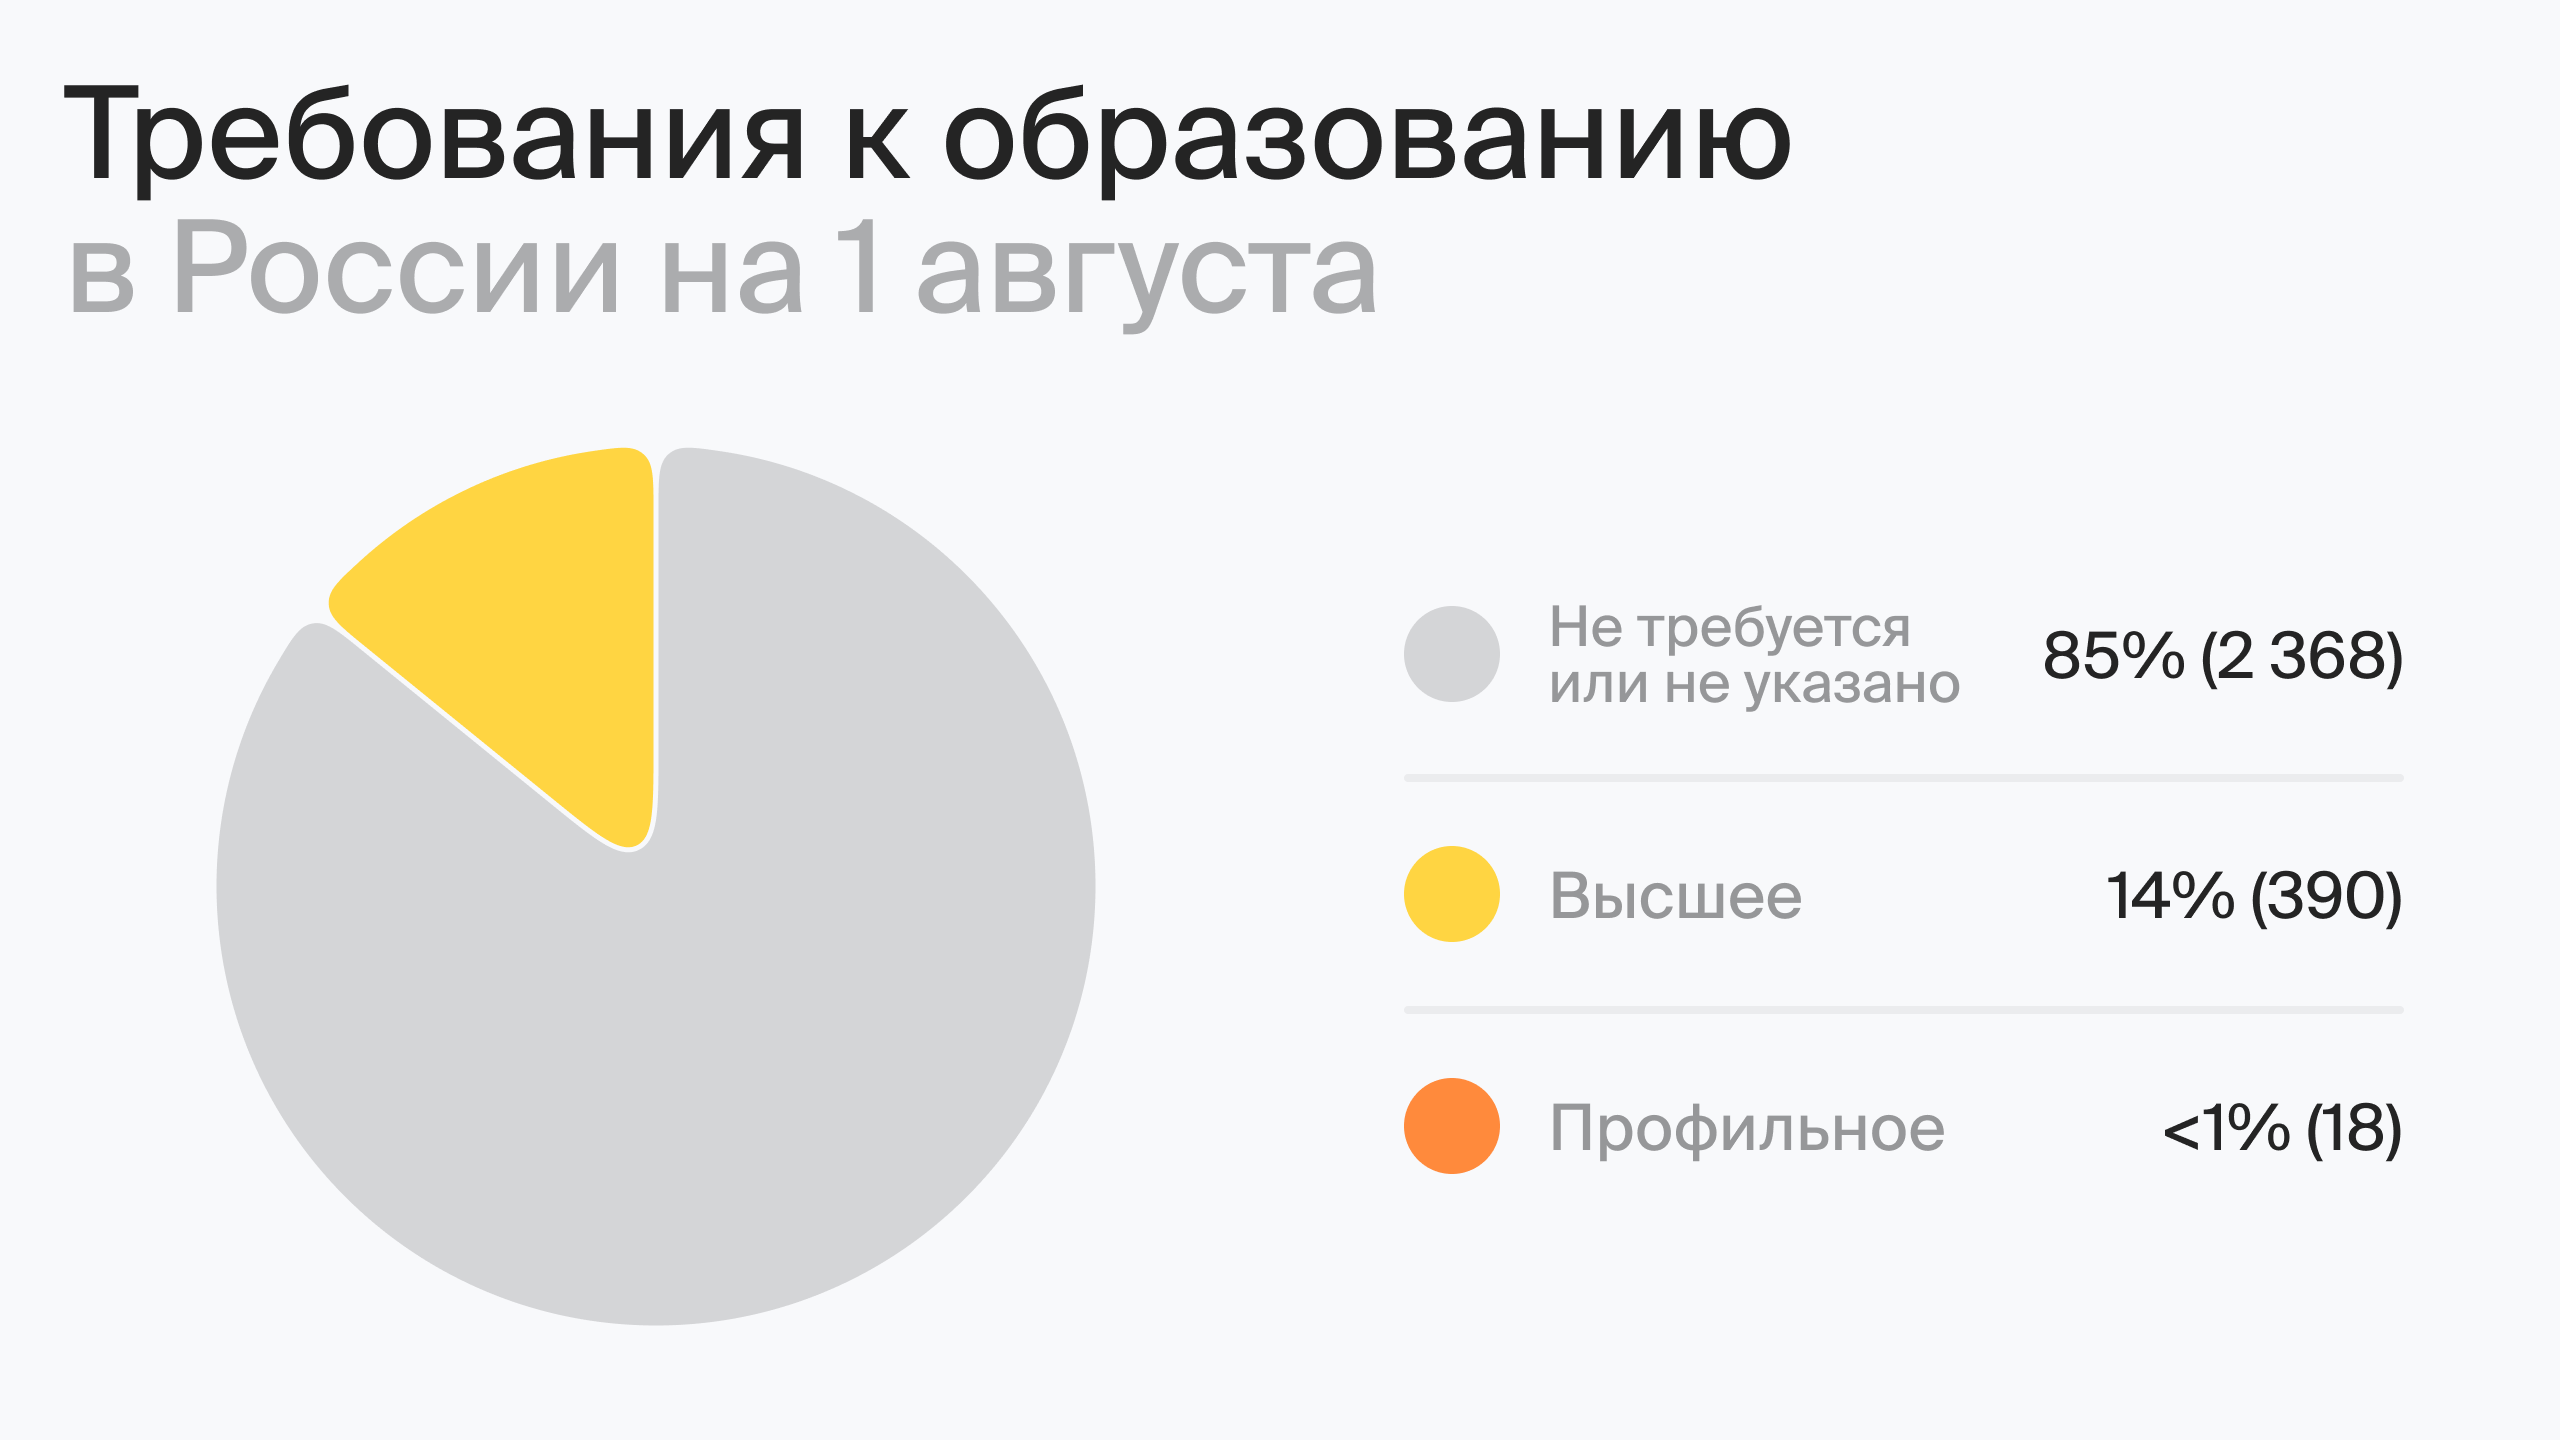 Требования к образованию в России на 1 августа (по данным hh.ru) 